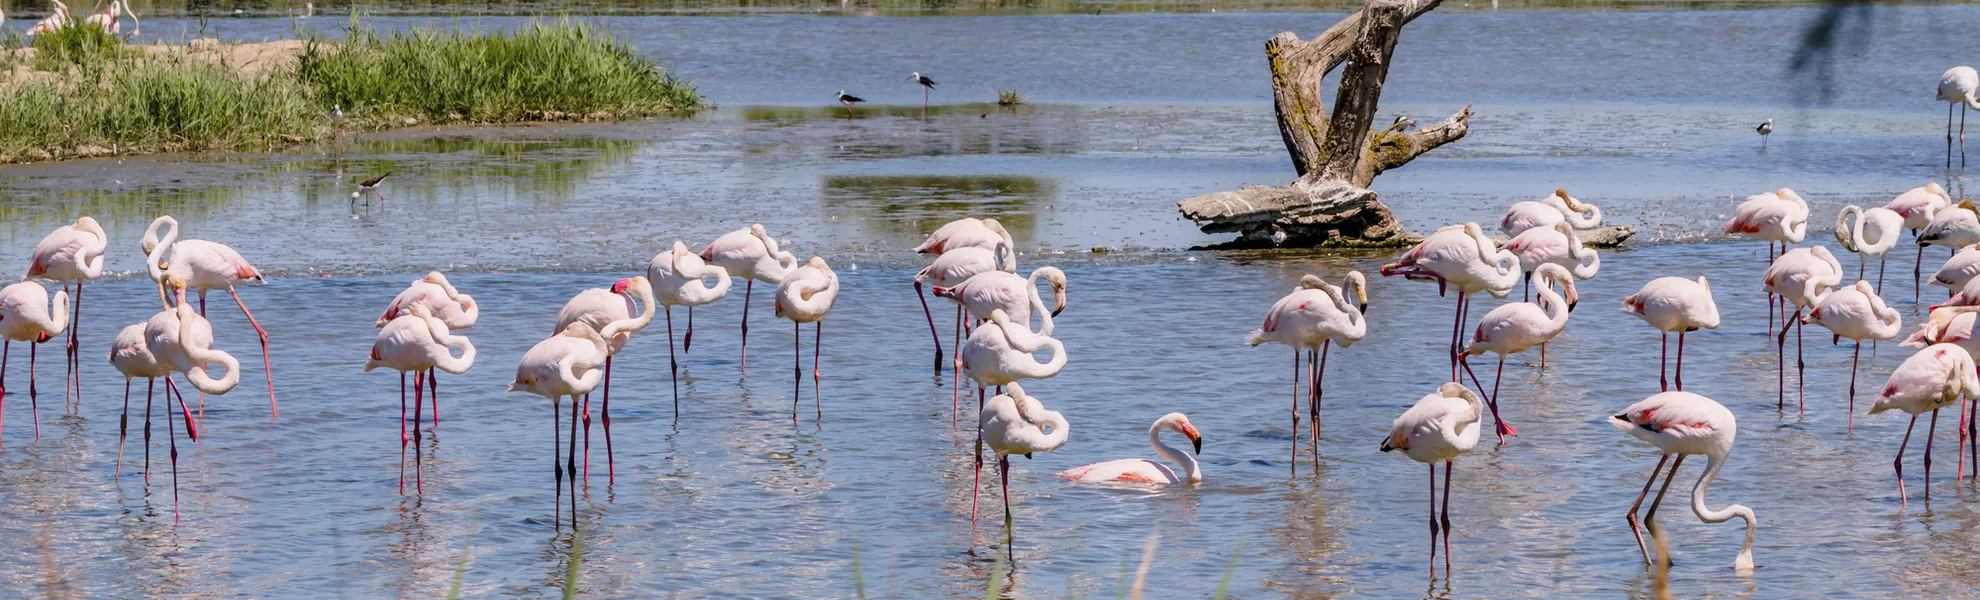 Flamingos, Camargue - © Gerald Villena - stock.adobe.com